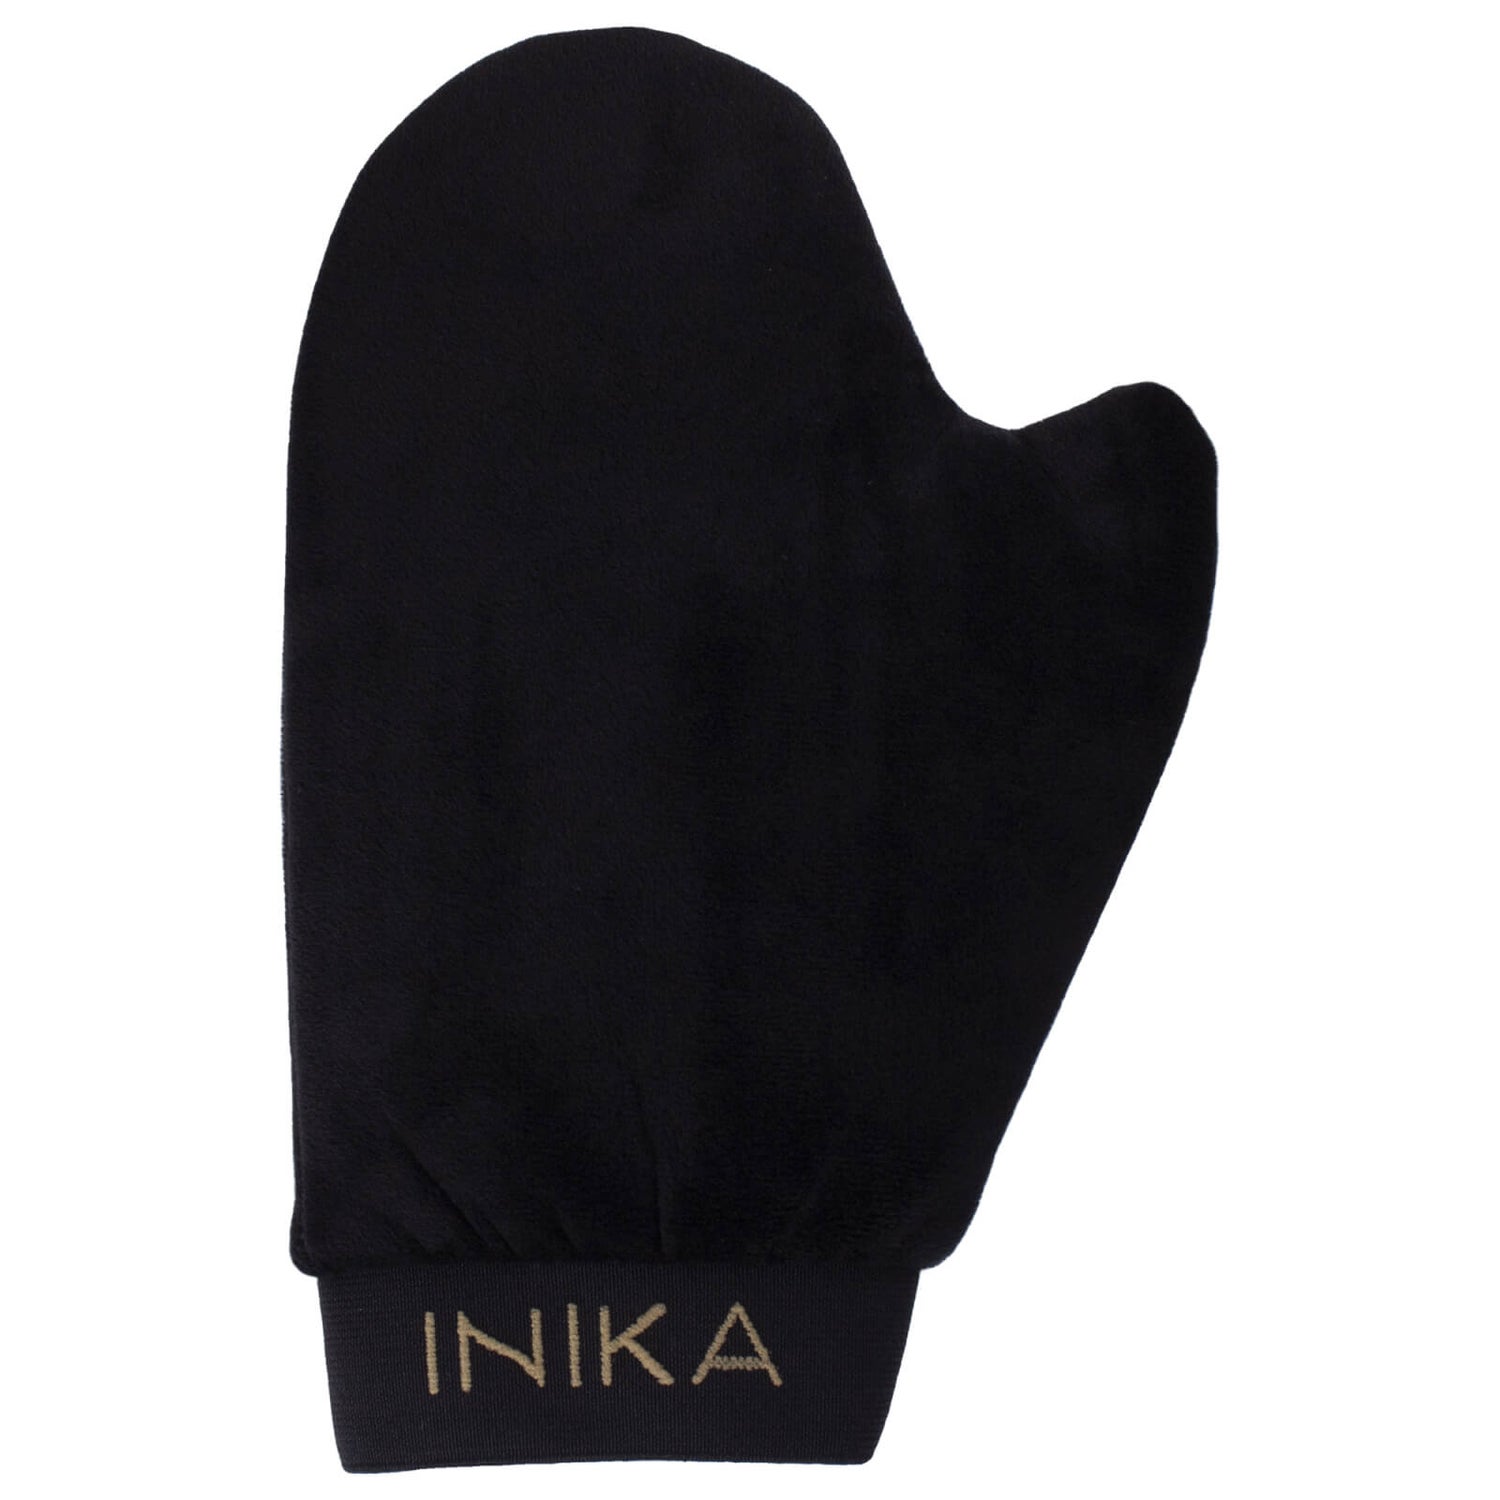 INIKA认证的有机日光浴手套